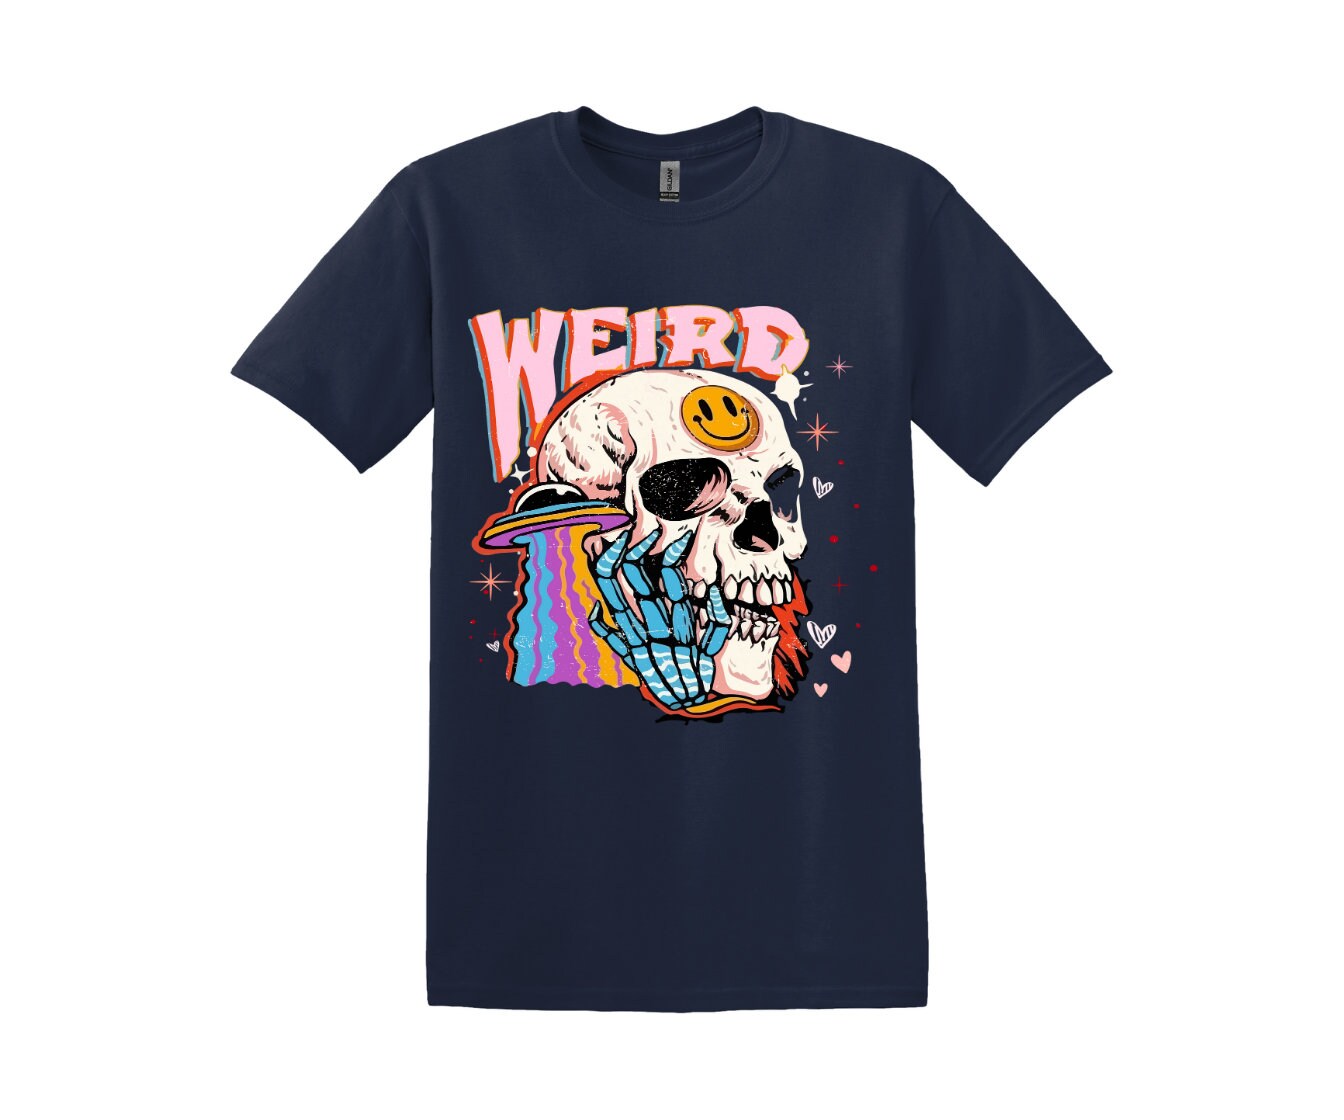 Weird Skull T-shirt, Cotton Unisex Style, Adult Tee